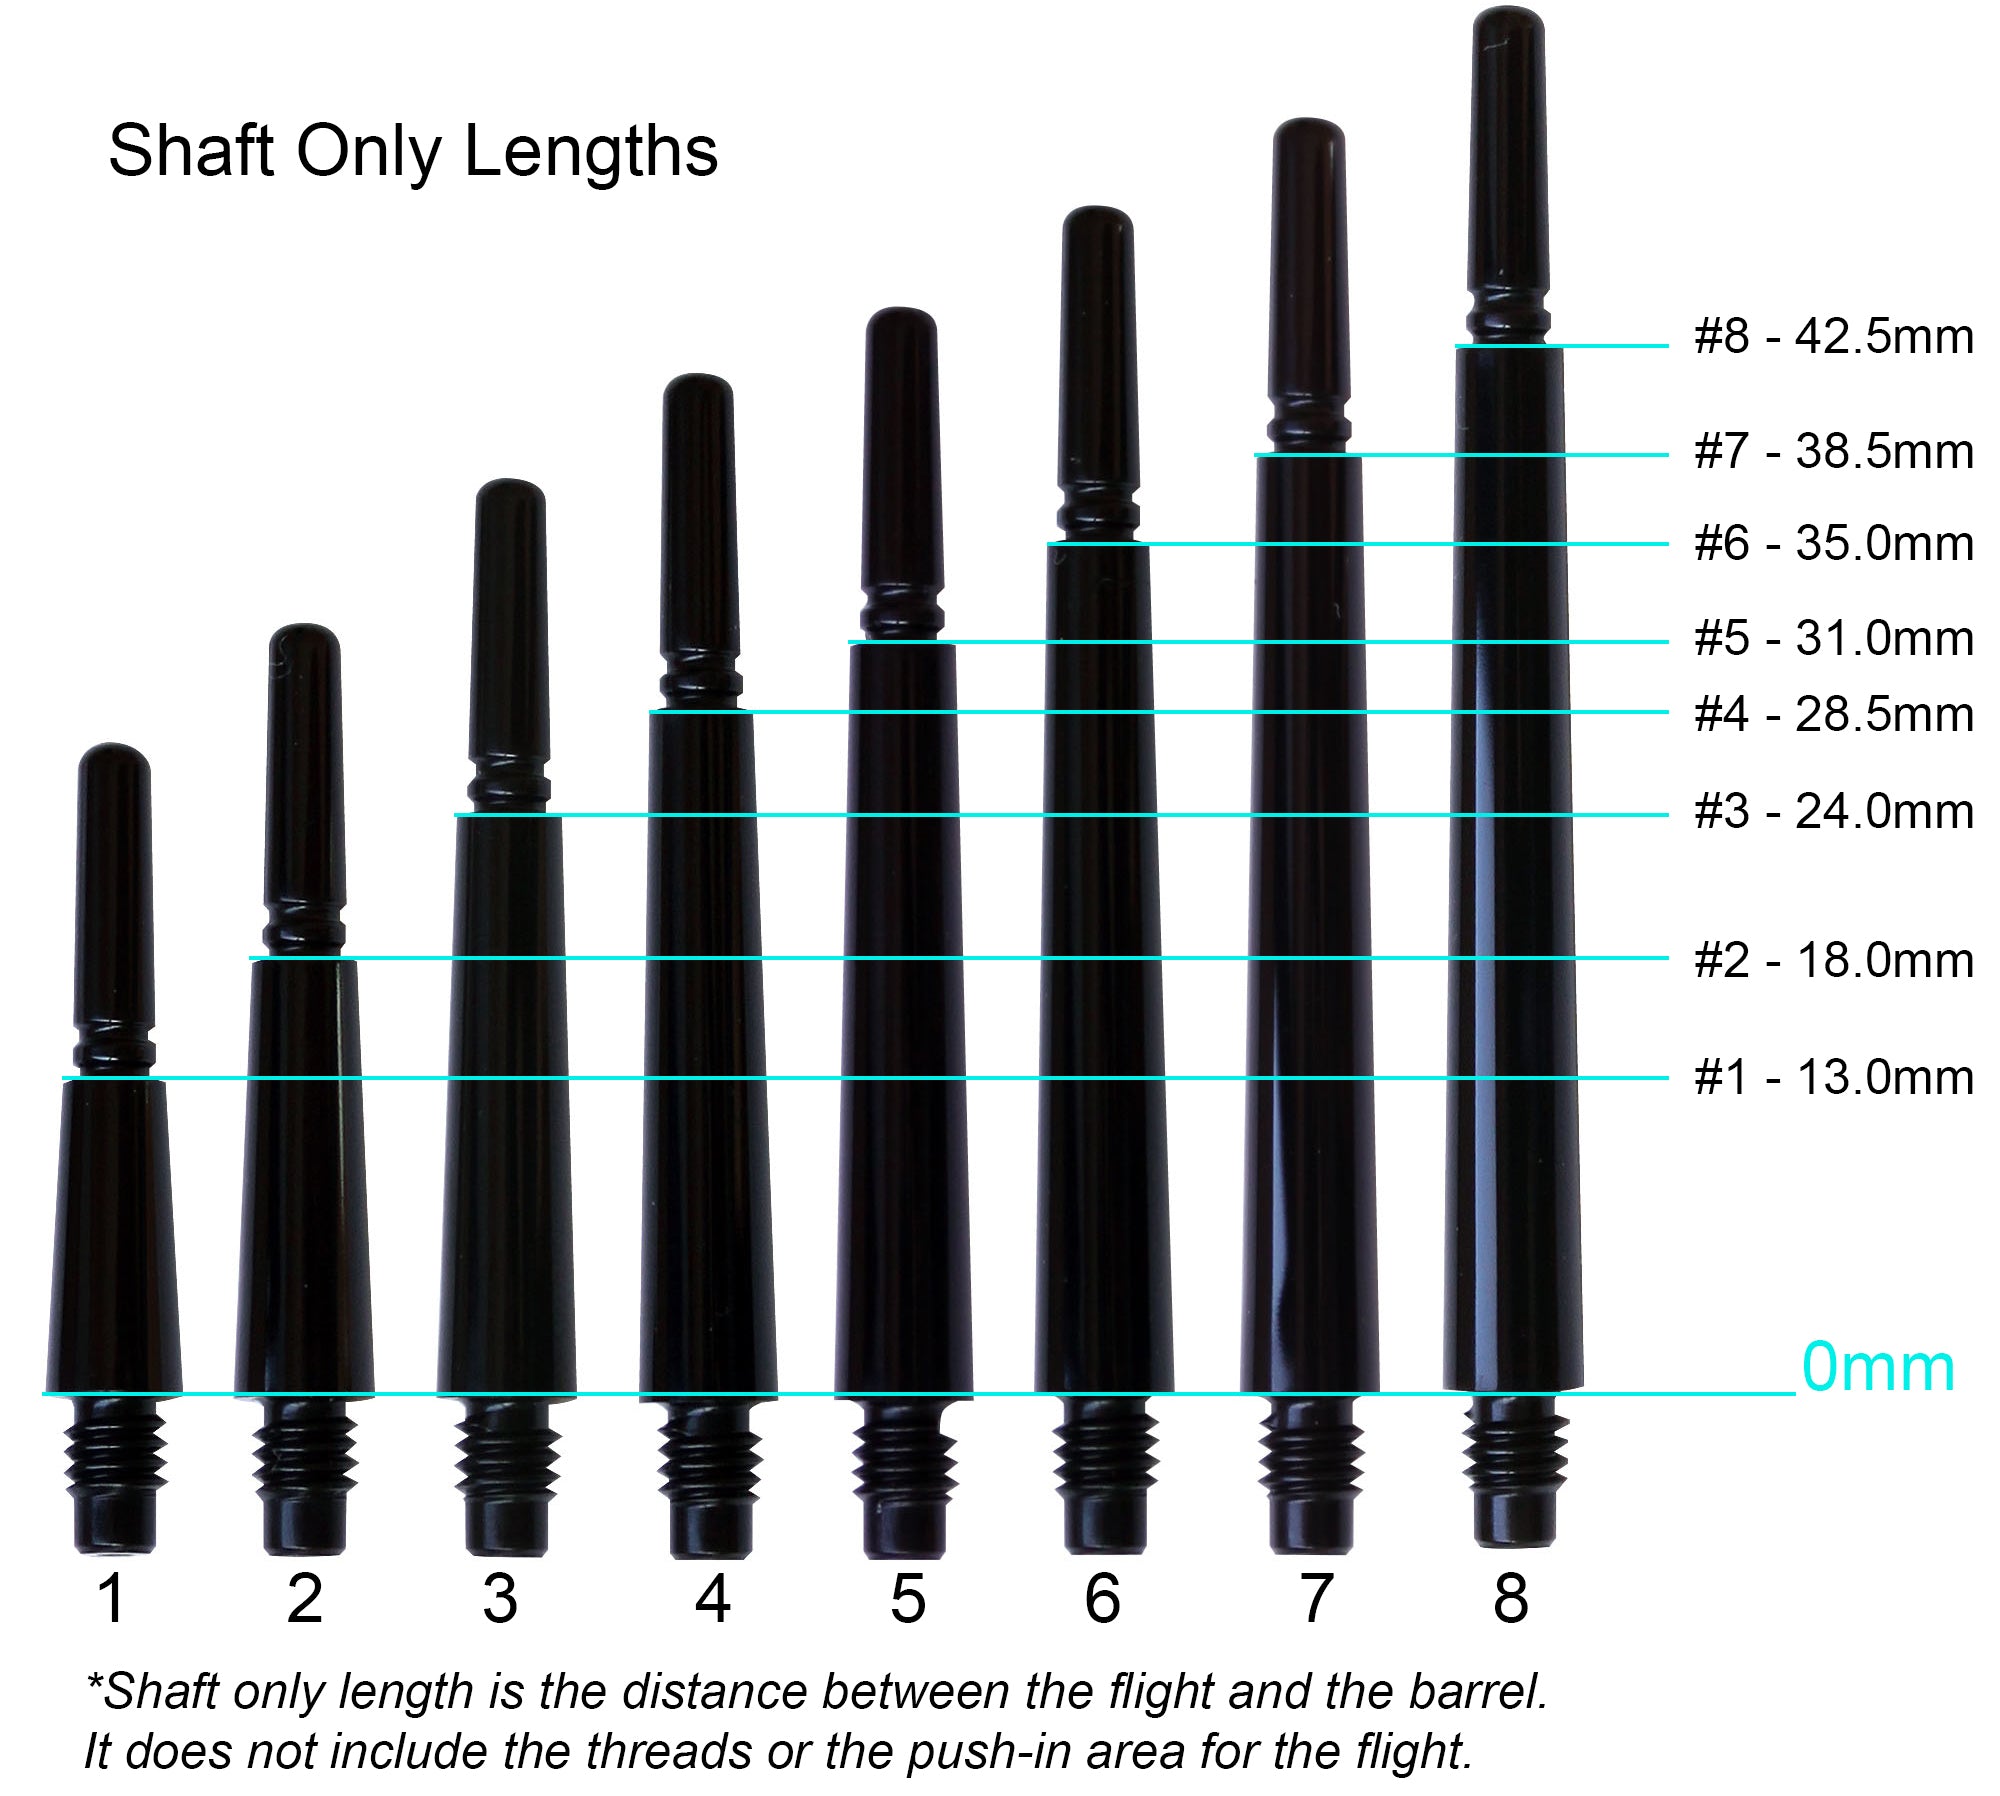 Fit Flight, Fit Flight Gear Slim Spinning Dart Shafts - Super X-Short #1 (13.0mm) Clear